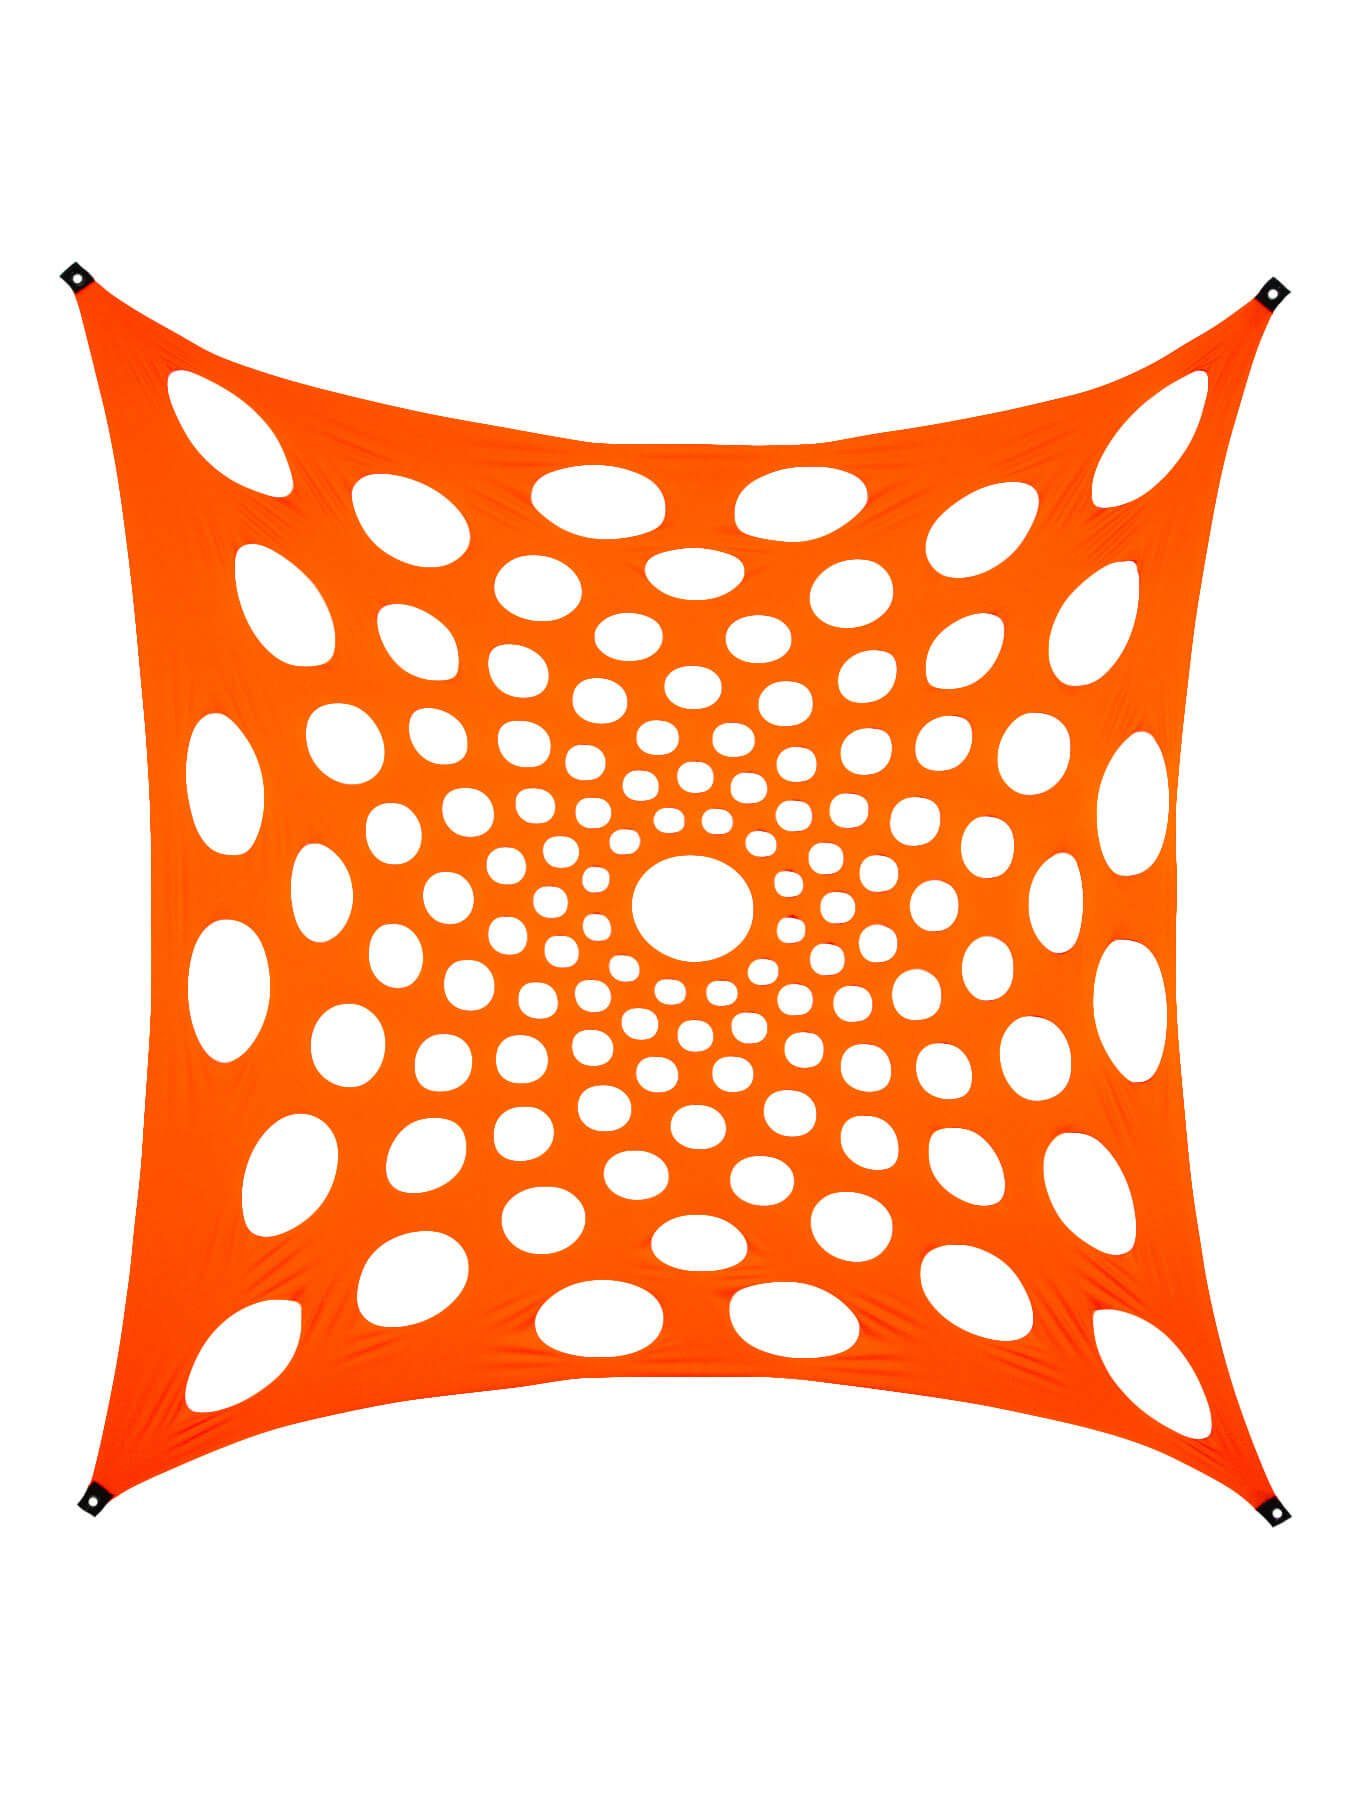 Wandteppich Schwarzlicht Segel Spandex "Mandala Dots II" Orange, 3x3m, PSYWORK, UV-aktiv, leuchtet unter Schwarzlicht